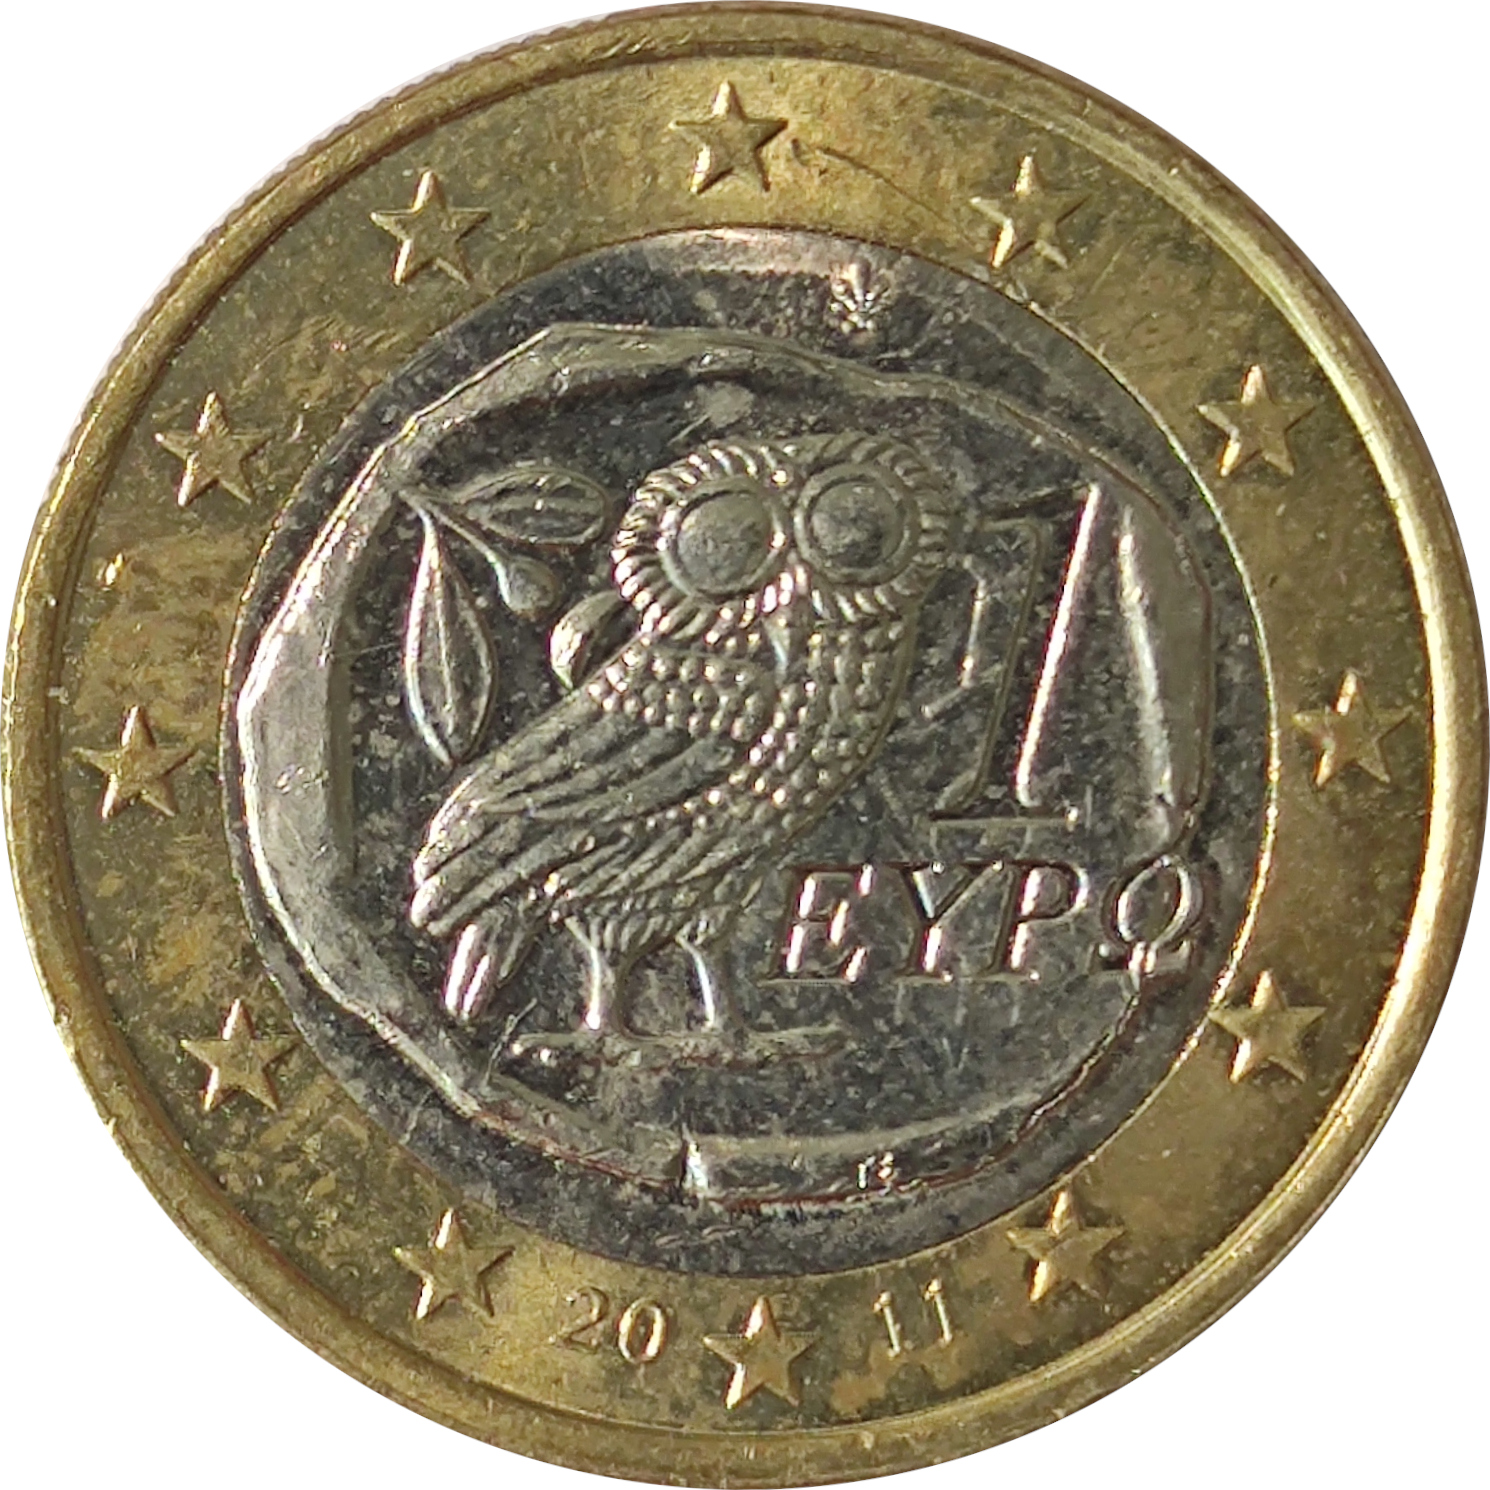 1 euro - Chouette